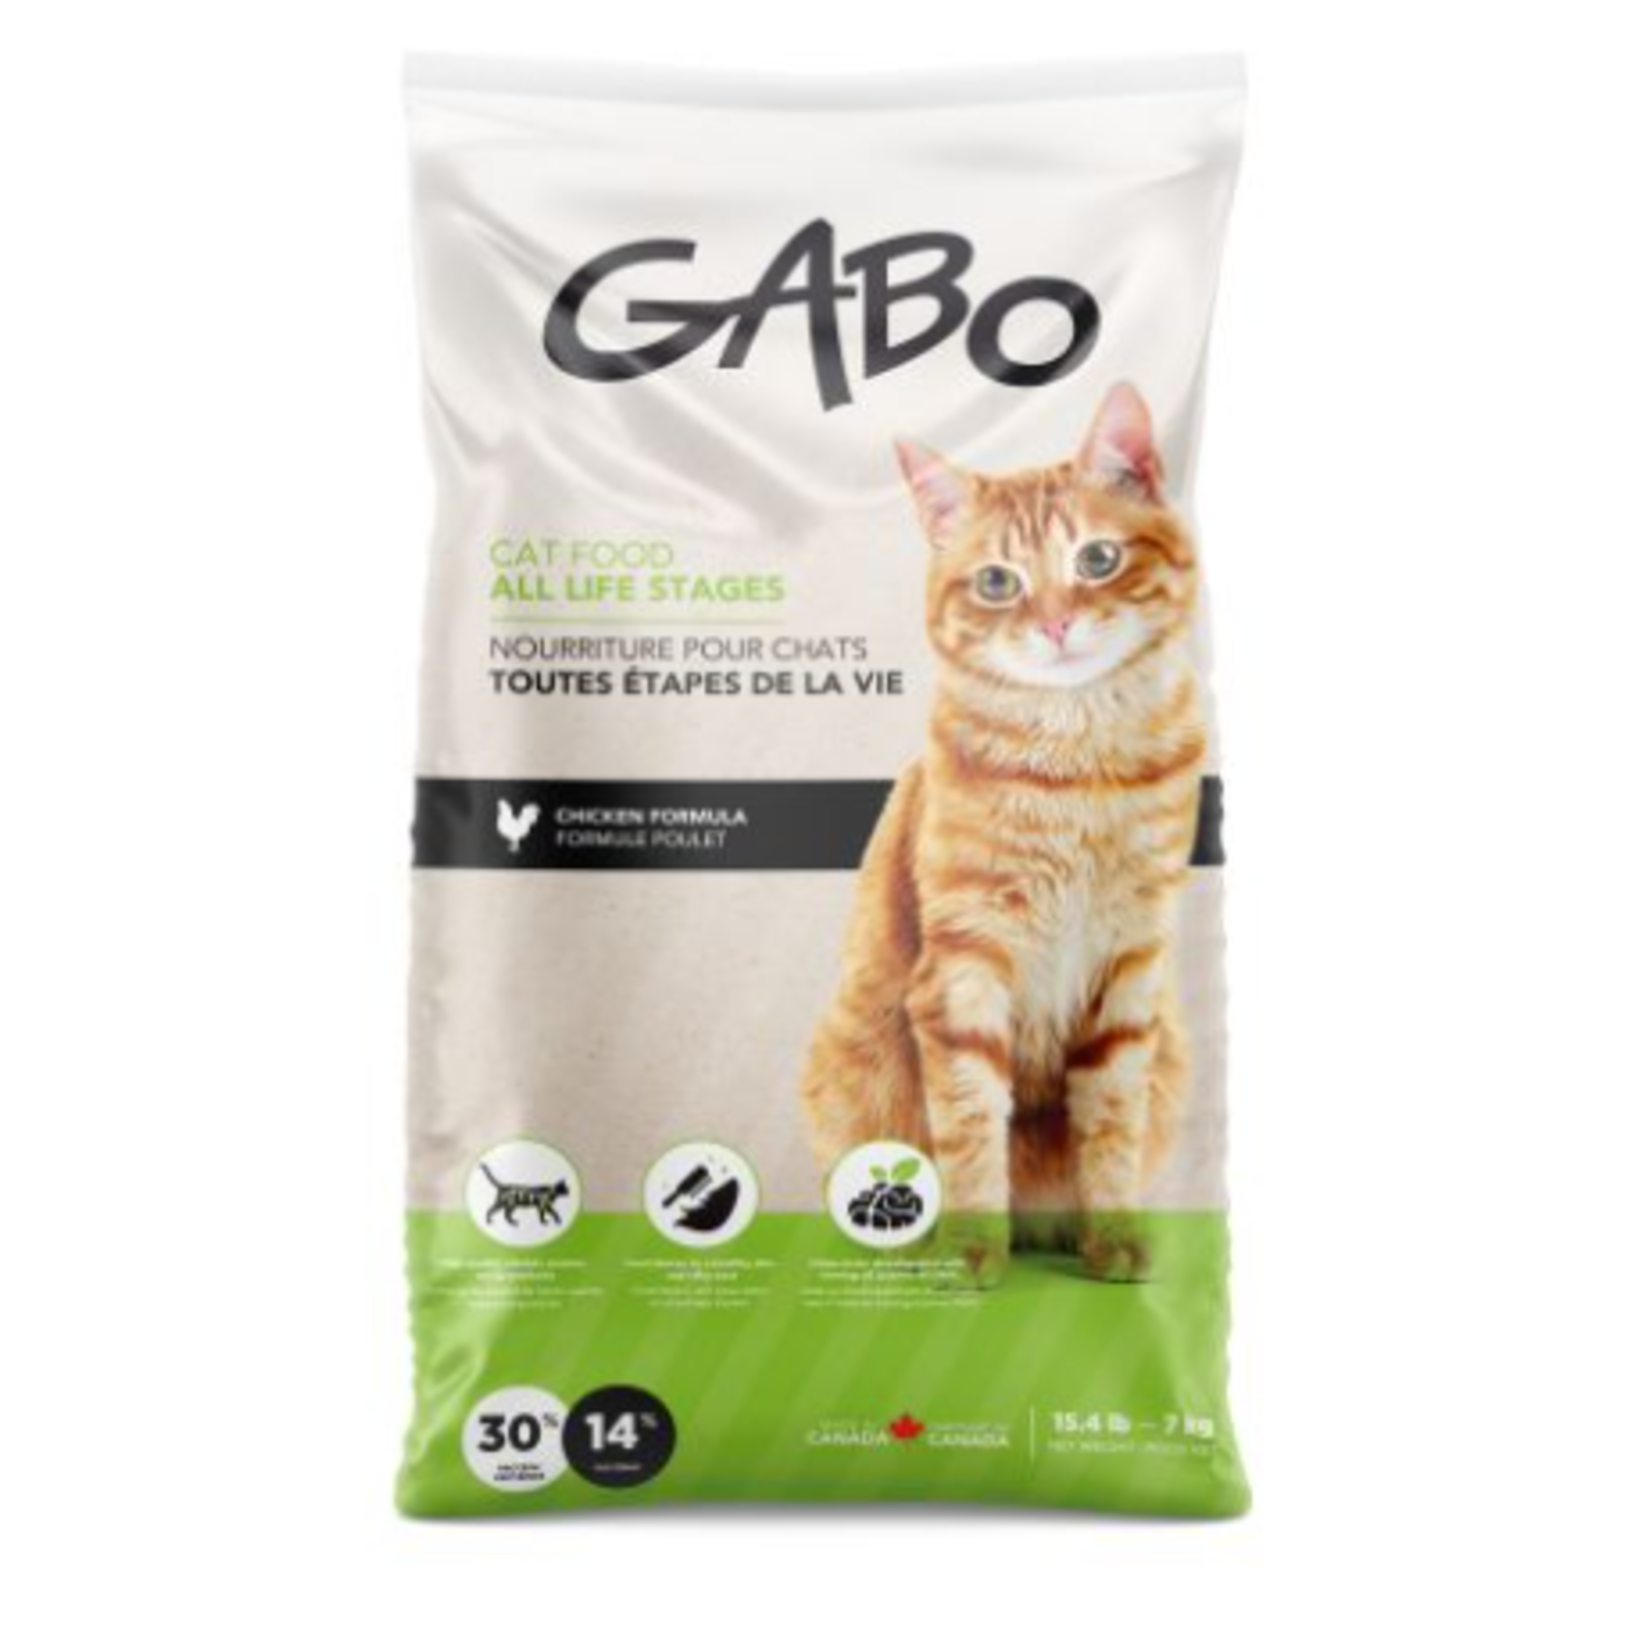 Gabo Nourriture pour chats et chatons - Poulet - 6,6 lbs